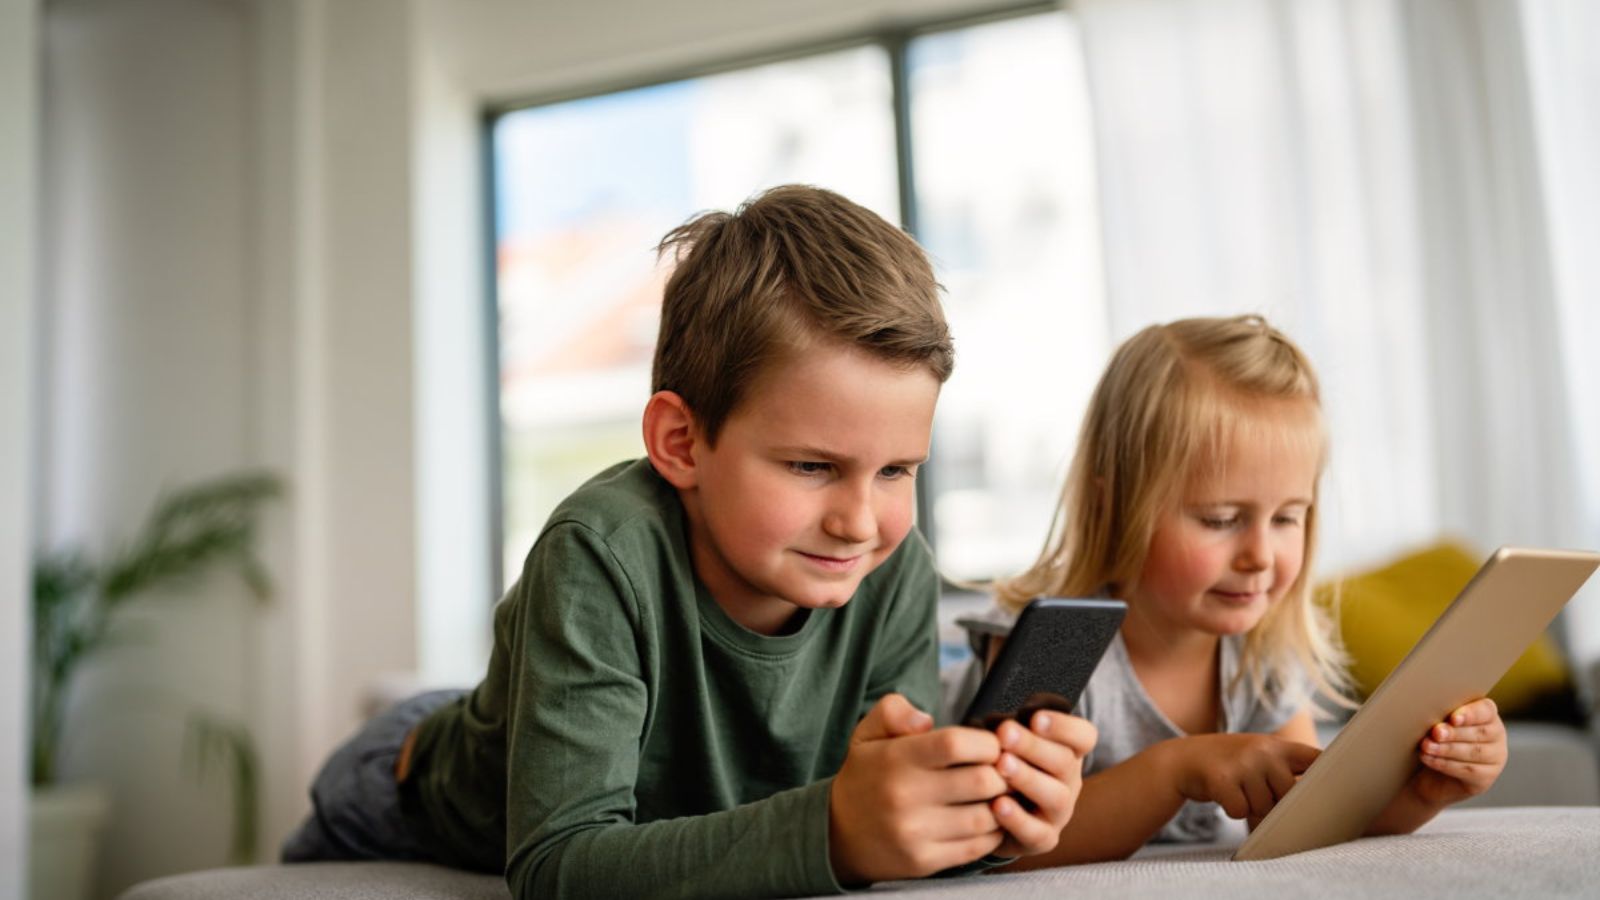 Smartphone e TABLET vietati agli minori di 11 anni, pronta la legge